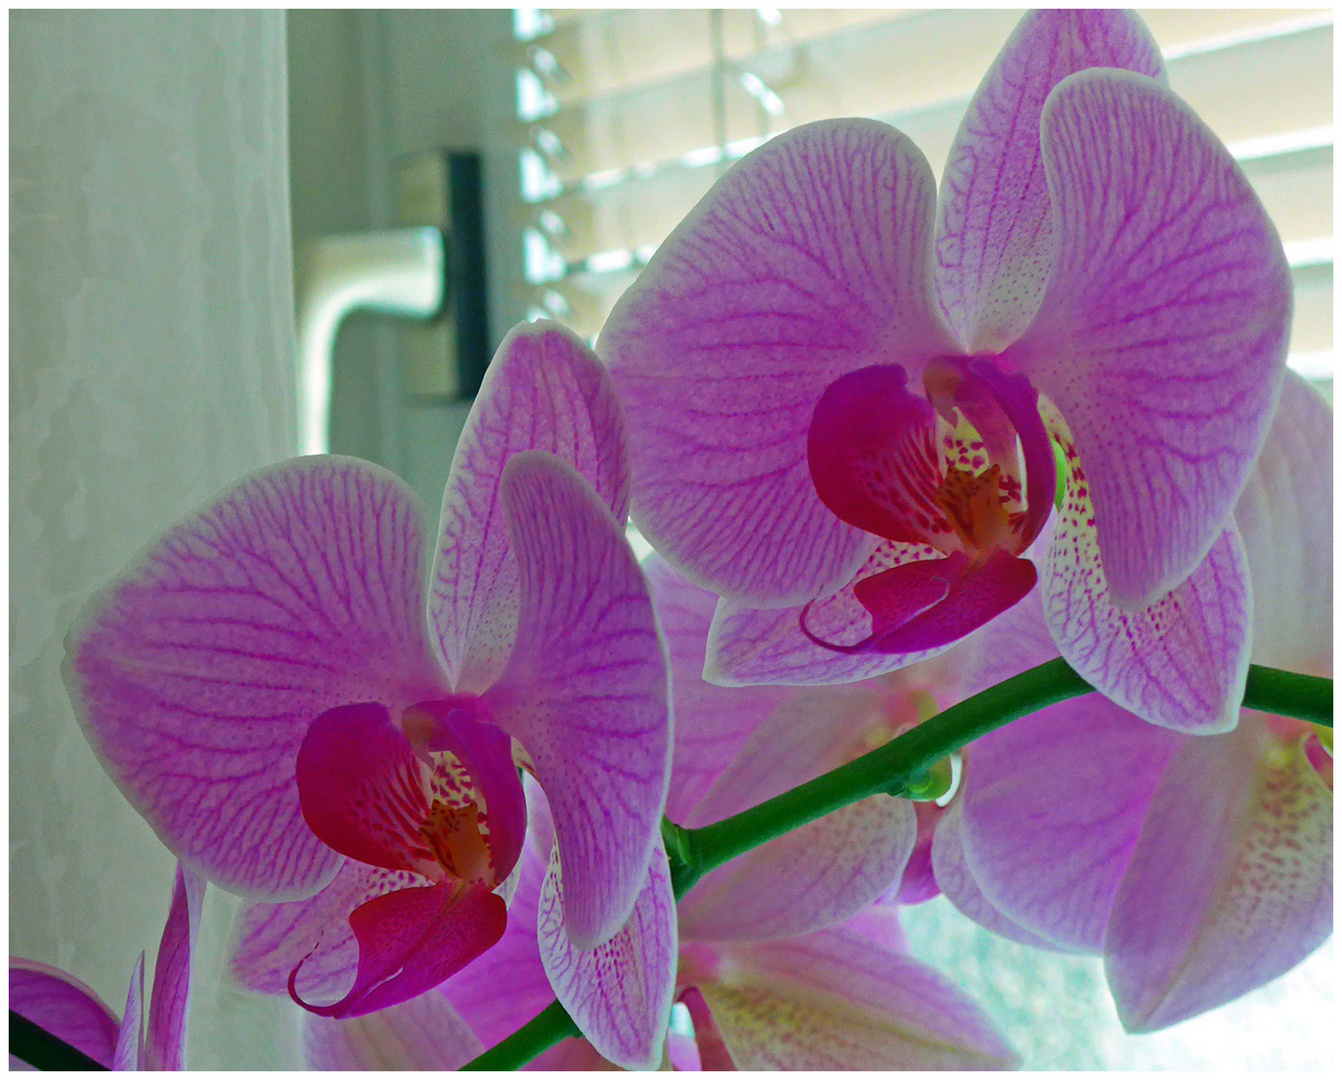 Meine orchideen blühen heuer sehr schön